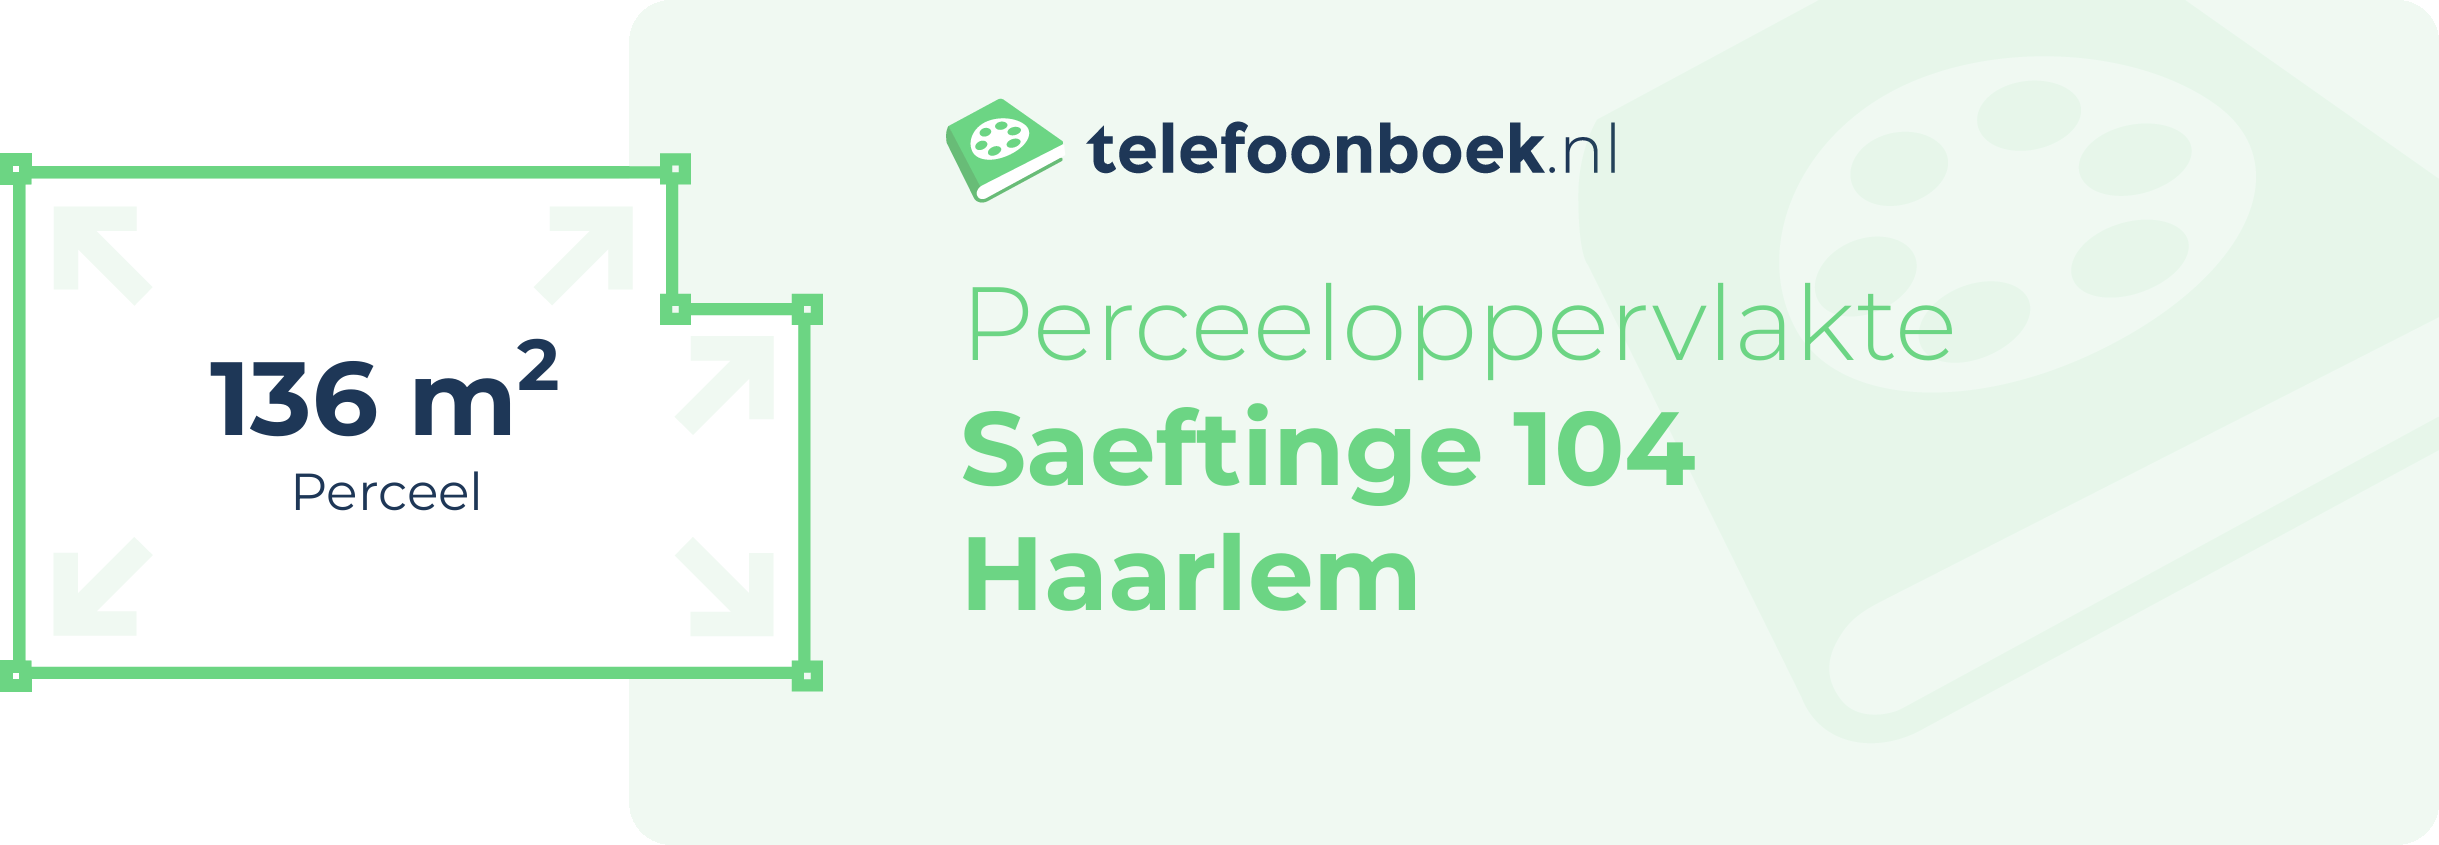 Perceeloppervlakte Saeftinge 104 Haarlem